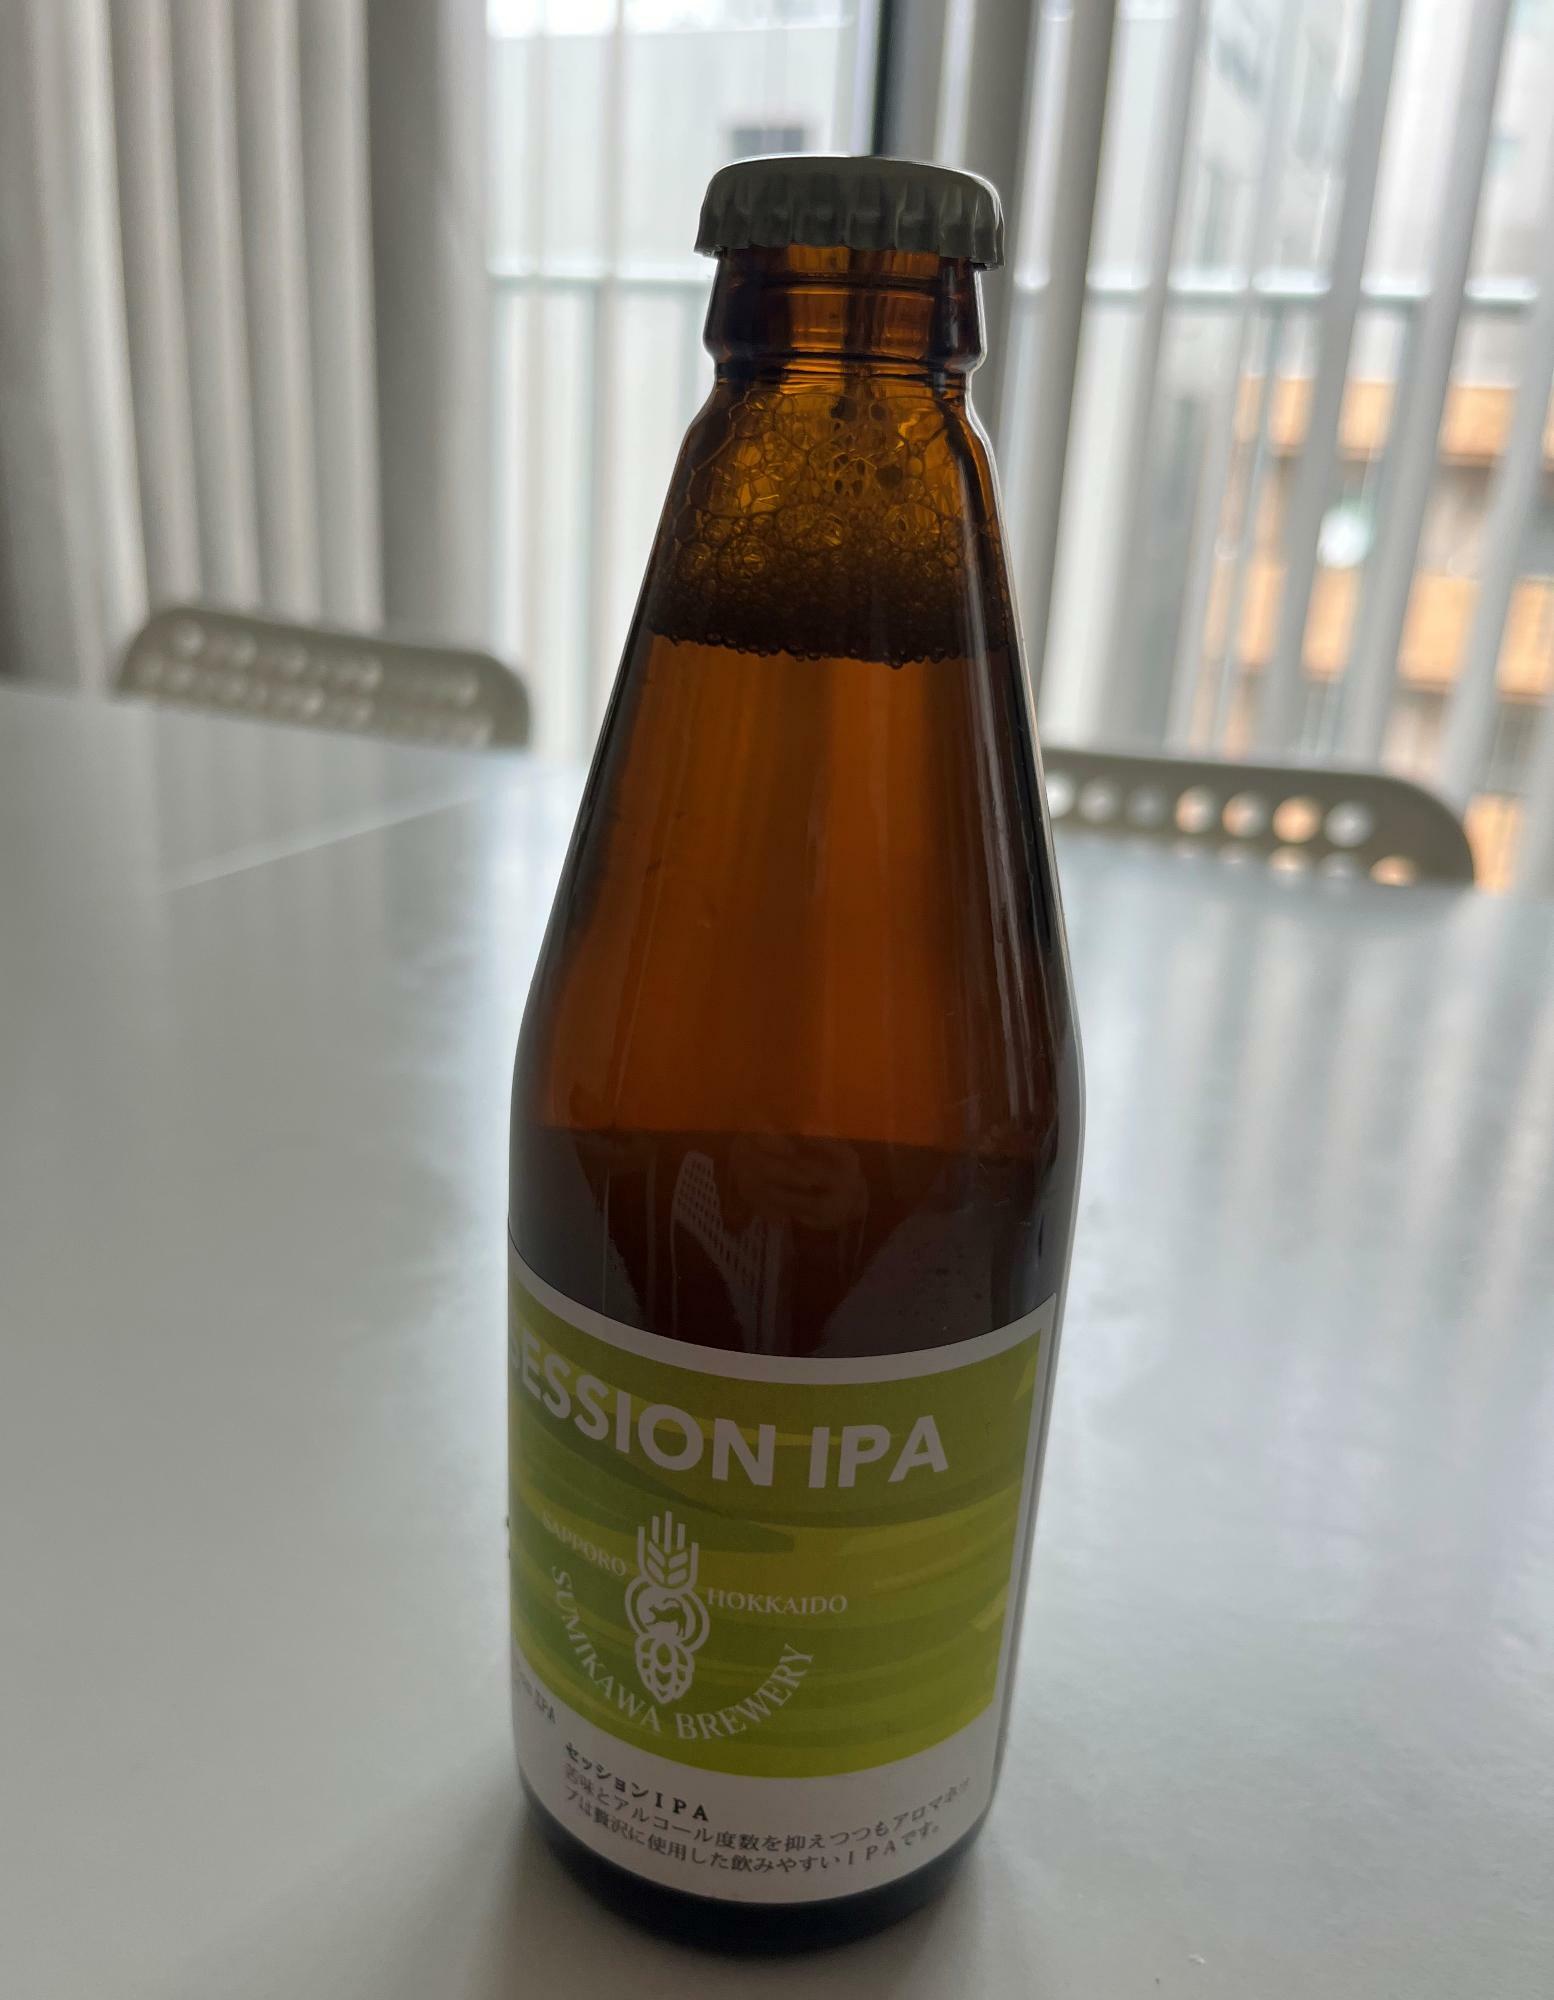 選択できるクラフトビールのひとつ、澄川麦酒の「セッションIPA」